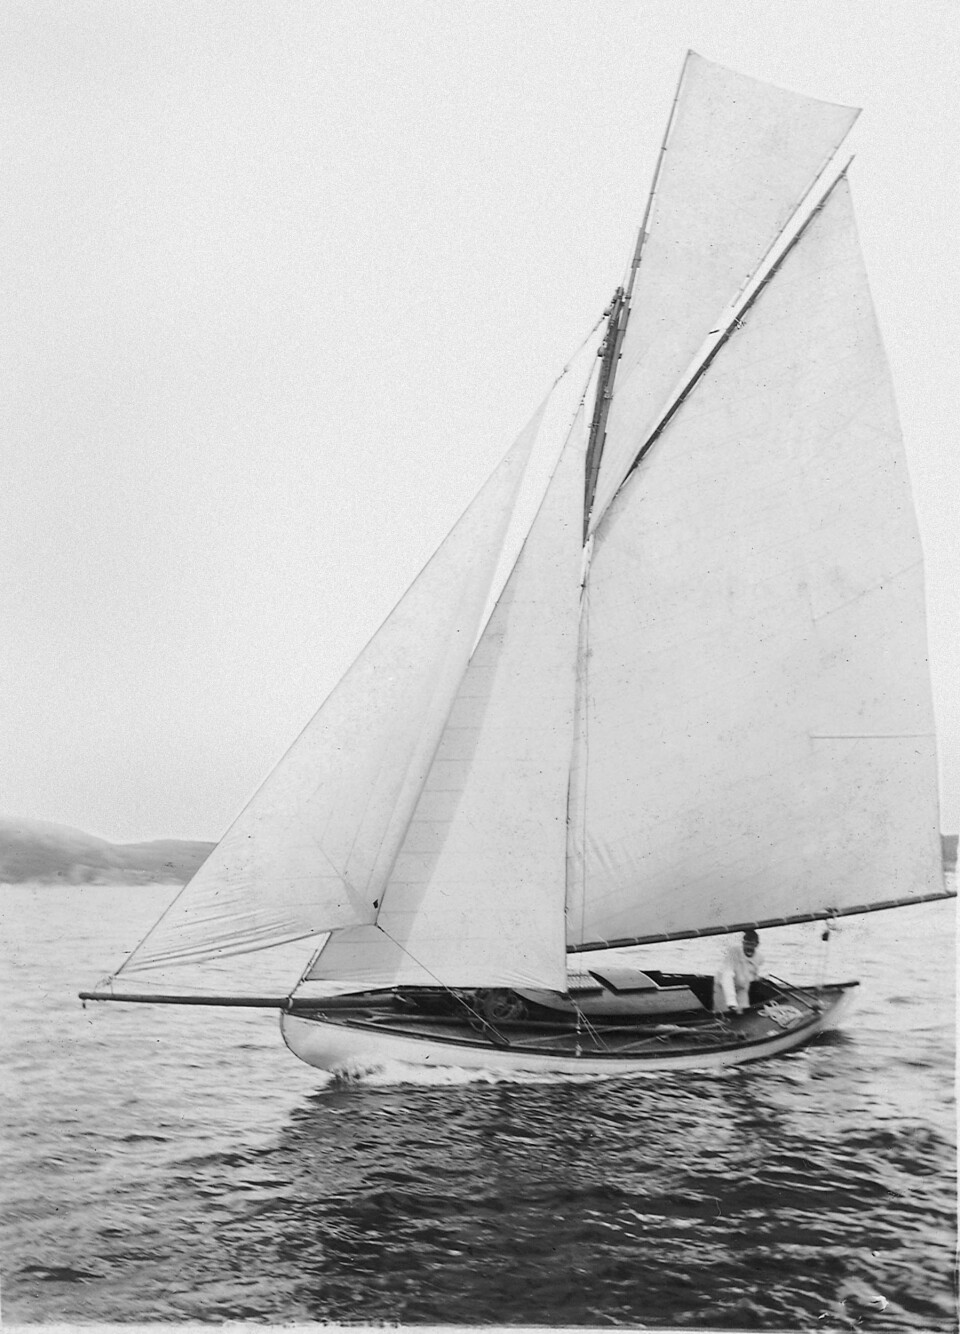 MINNIE:  Med denne båten seilte Jacs svoger, John Bentinck Martin, rundt om i Norge og gjorde seg sine notater og knyttet kontakter i sitt spionarbeide.